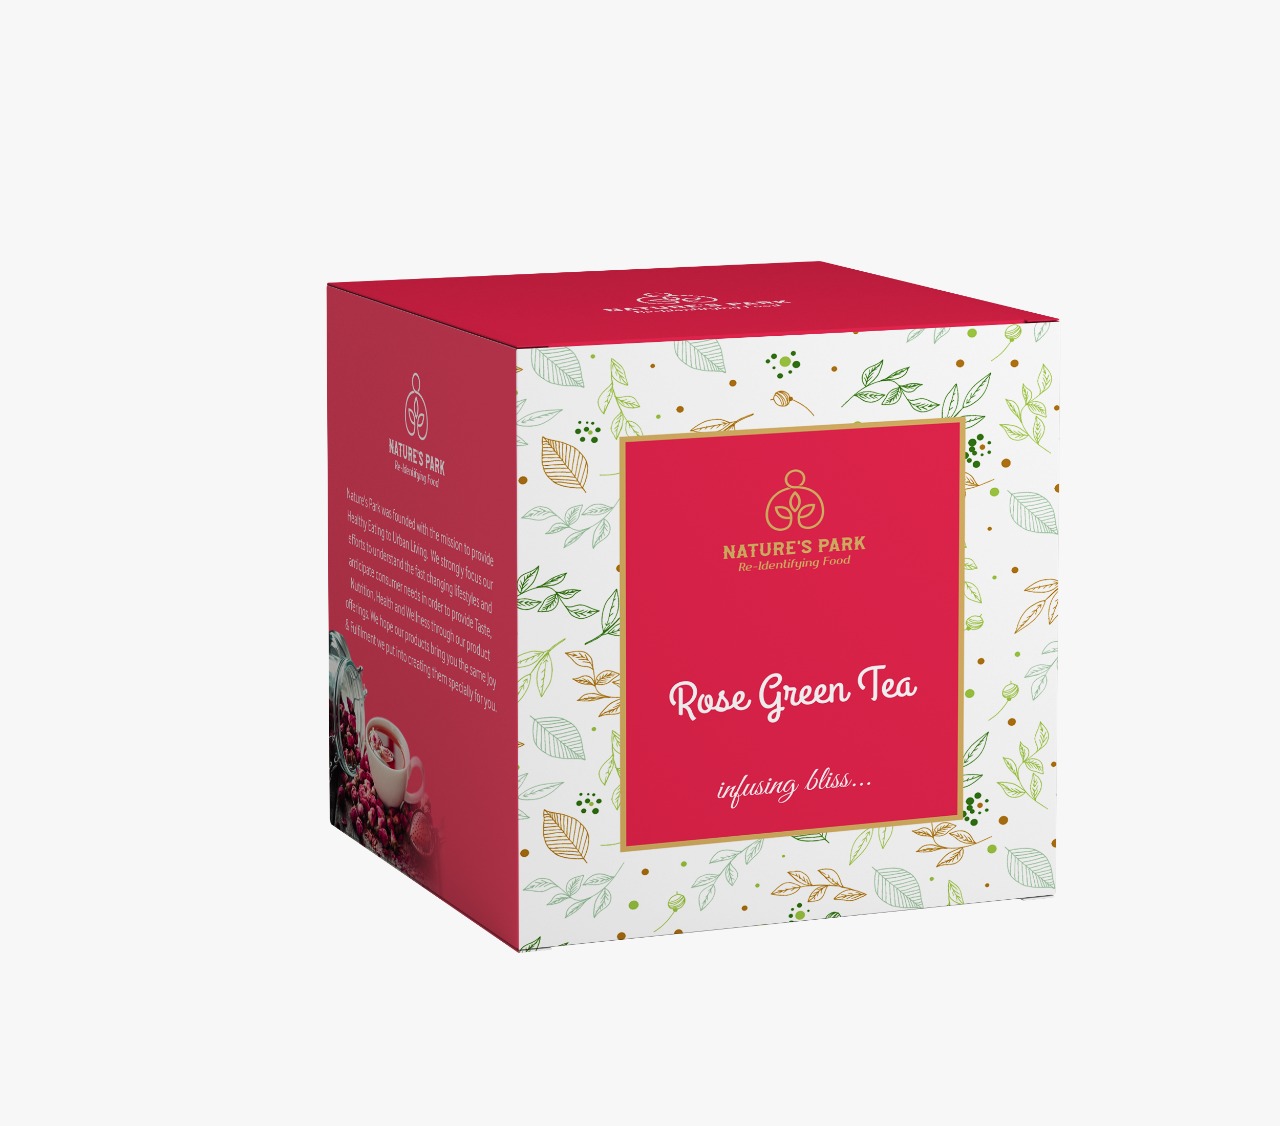 Product: Natures Park Rose Green Tea Pyramid Tea Bags (20 Pcs)